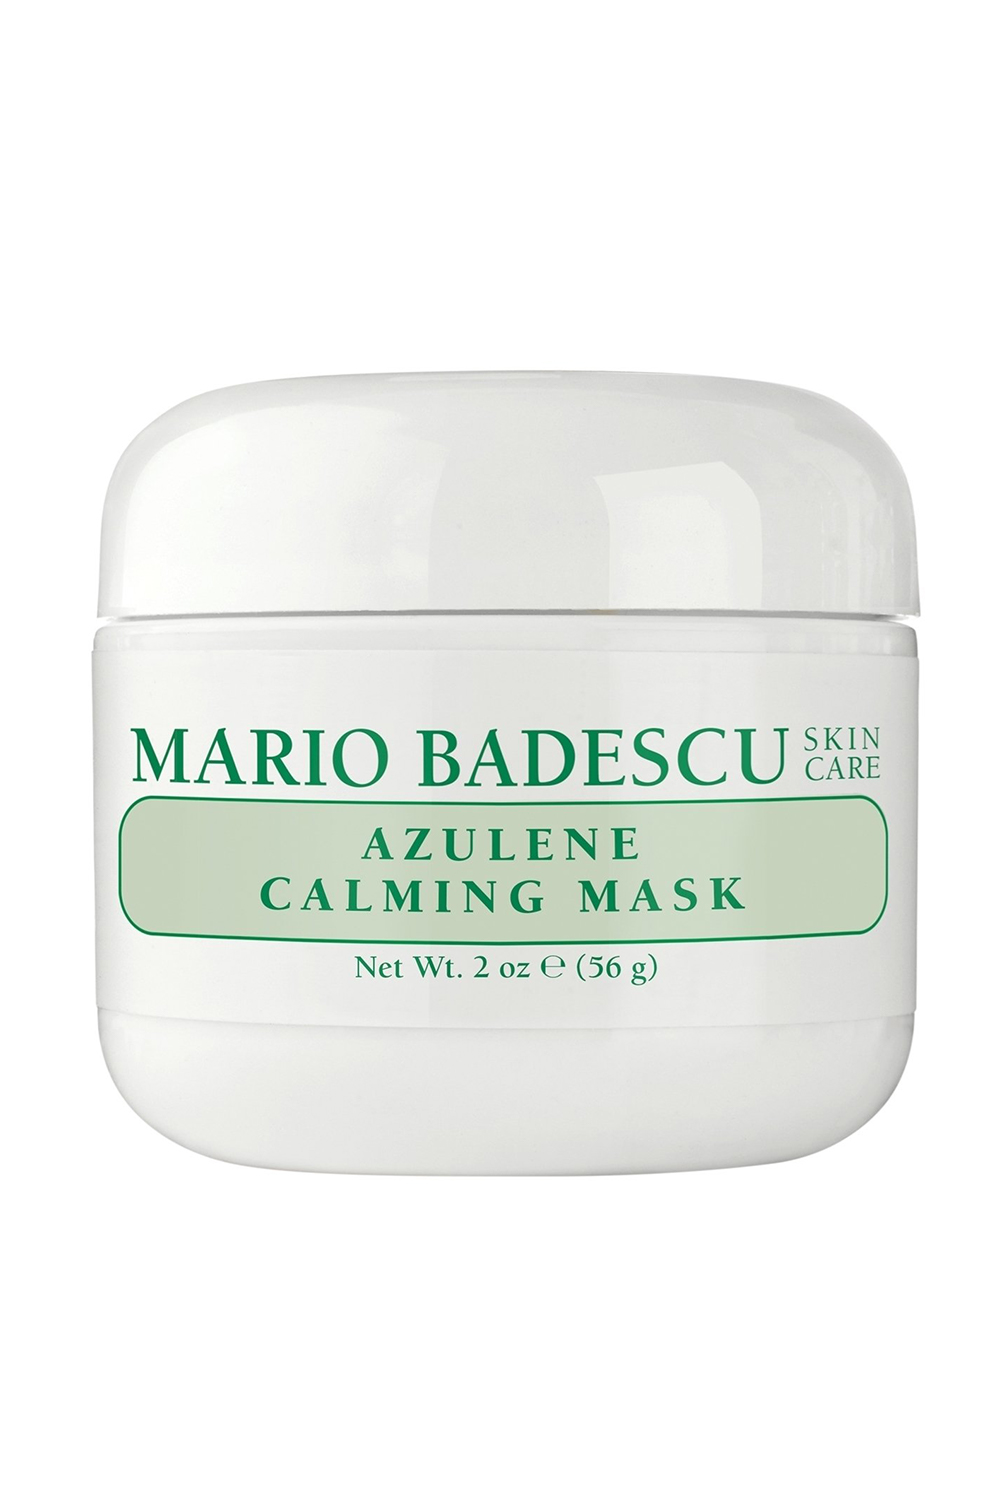 Mario Badescu Azulene Calming Mask.